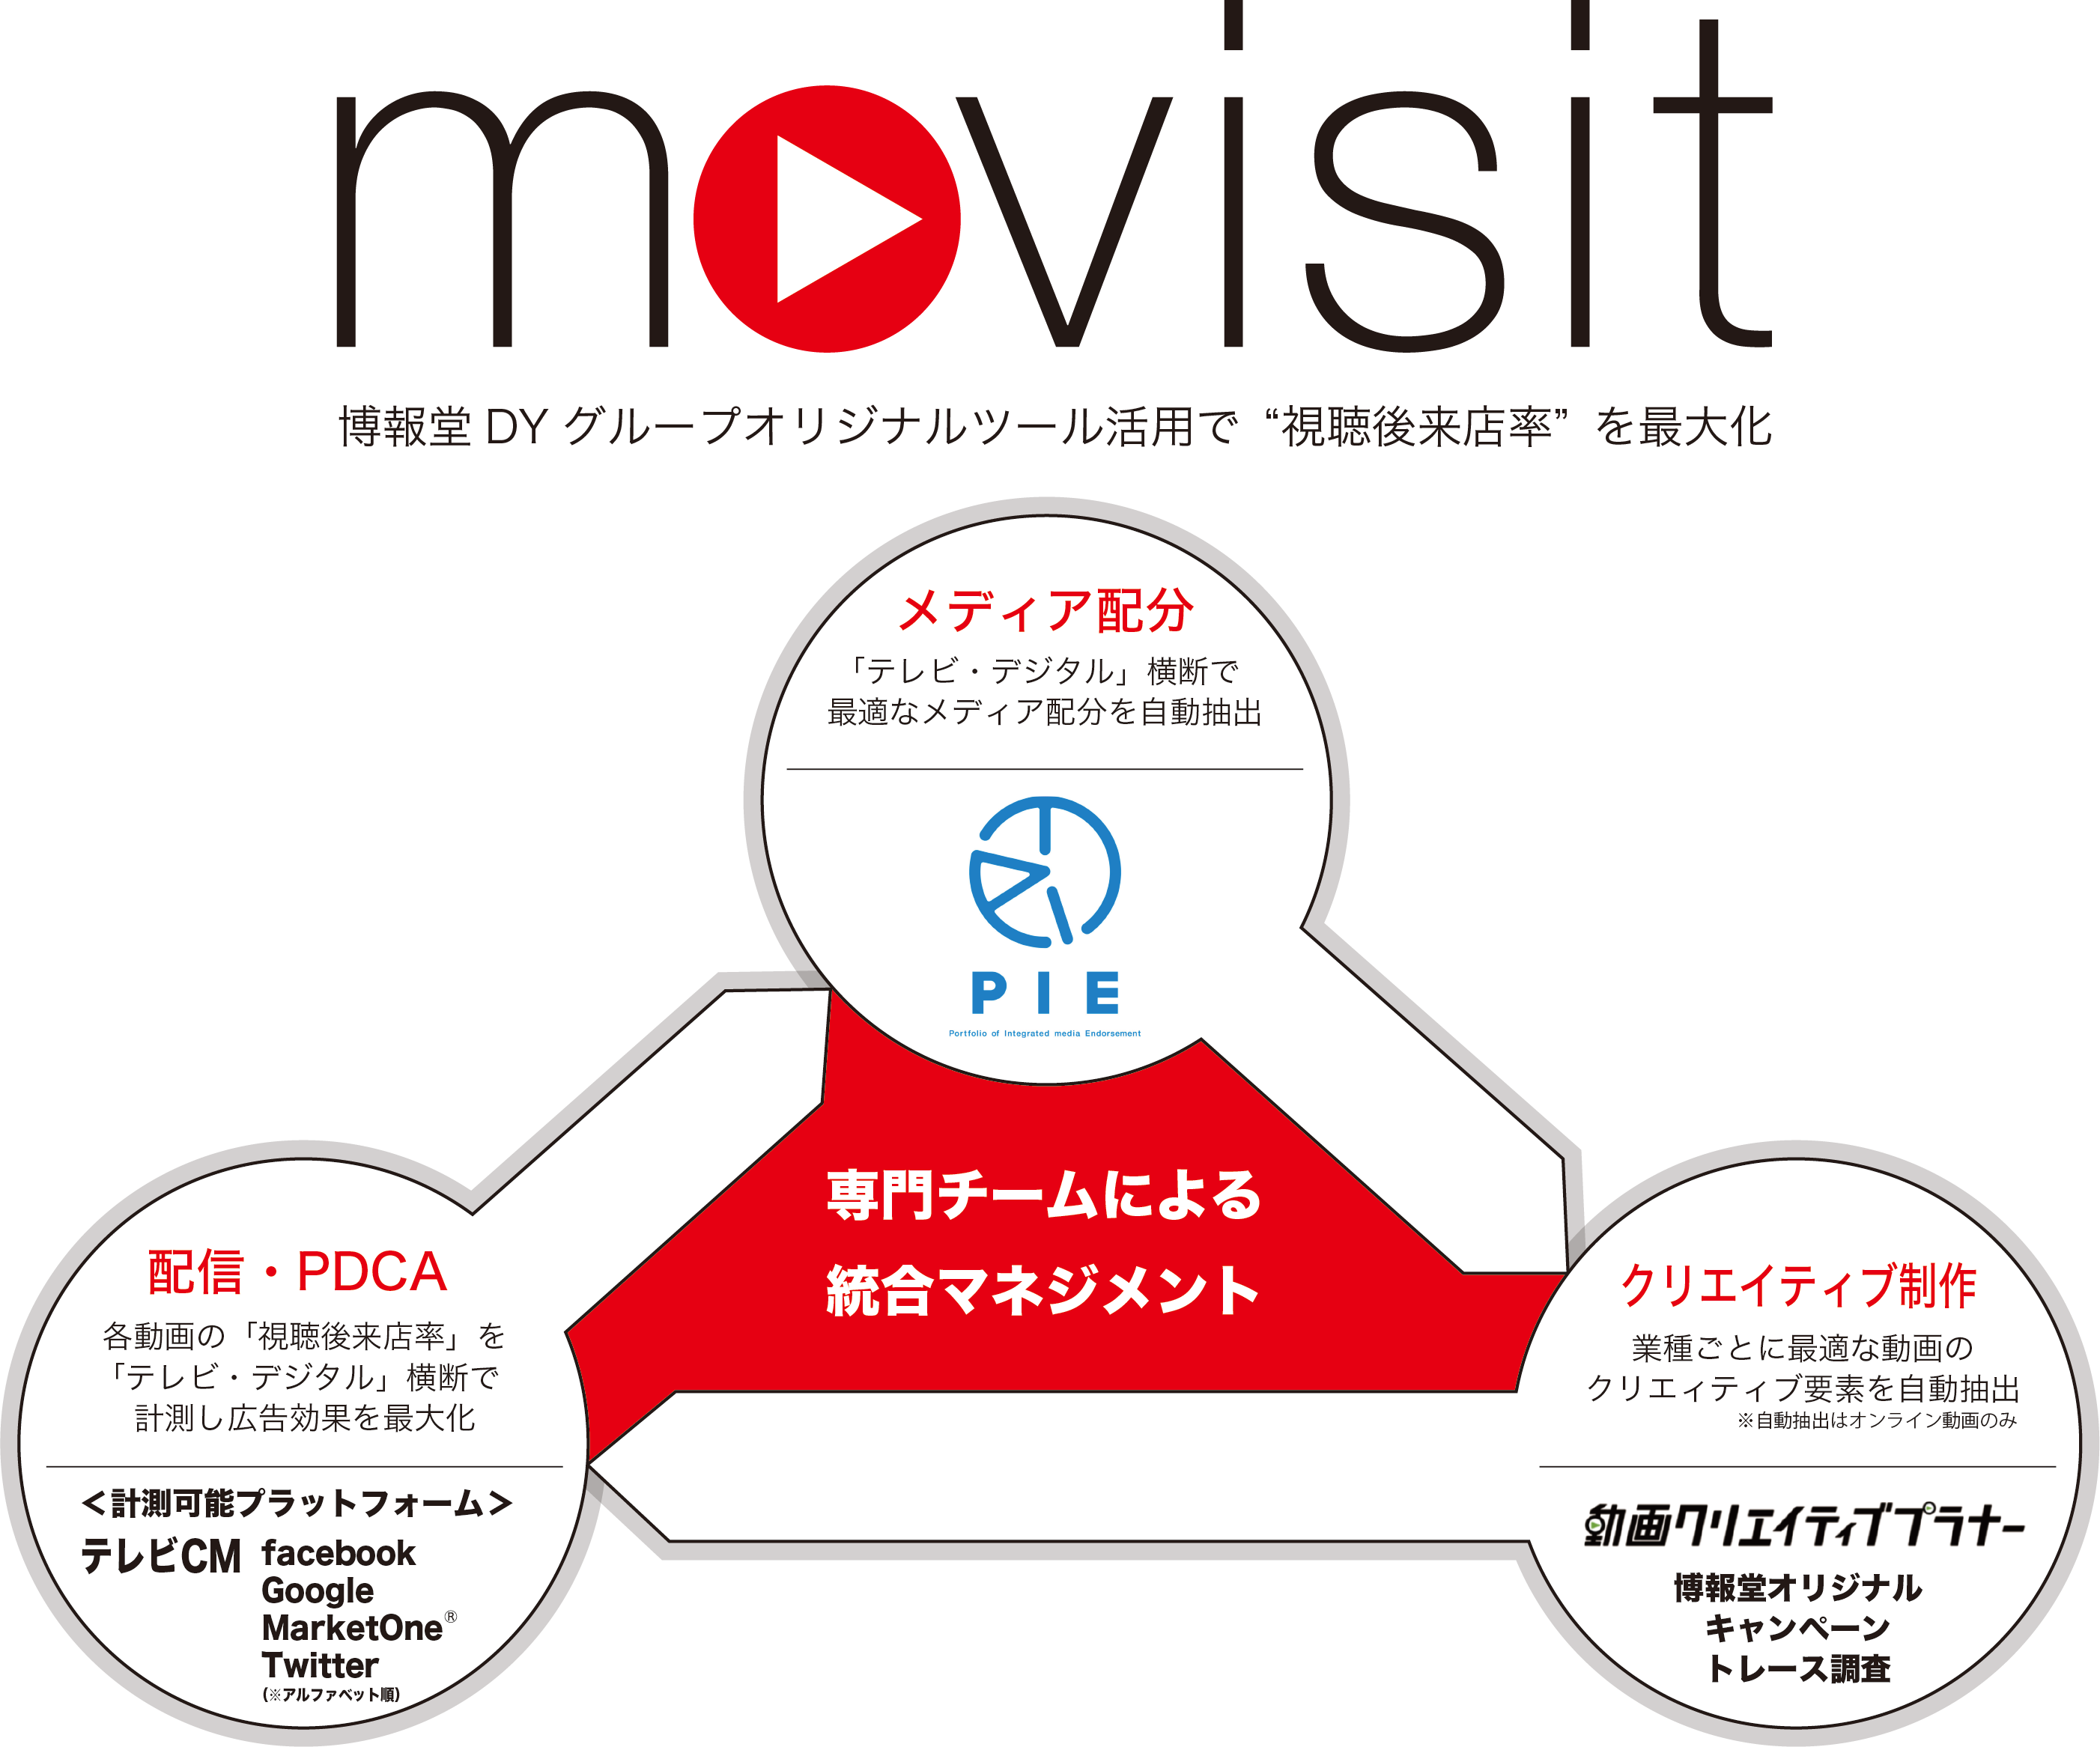 博報堂、「テレビ・デジタル」横断で来店効果の最大化を目指す専門チーム「movisit」を始動